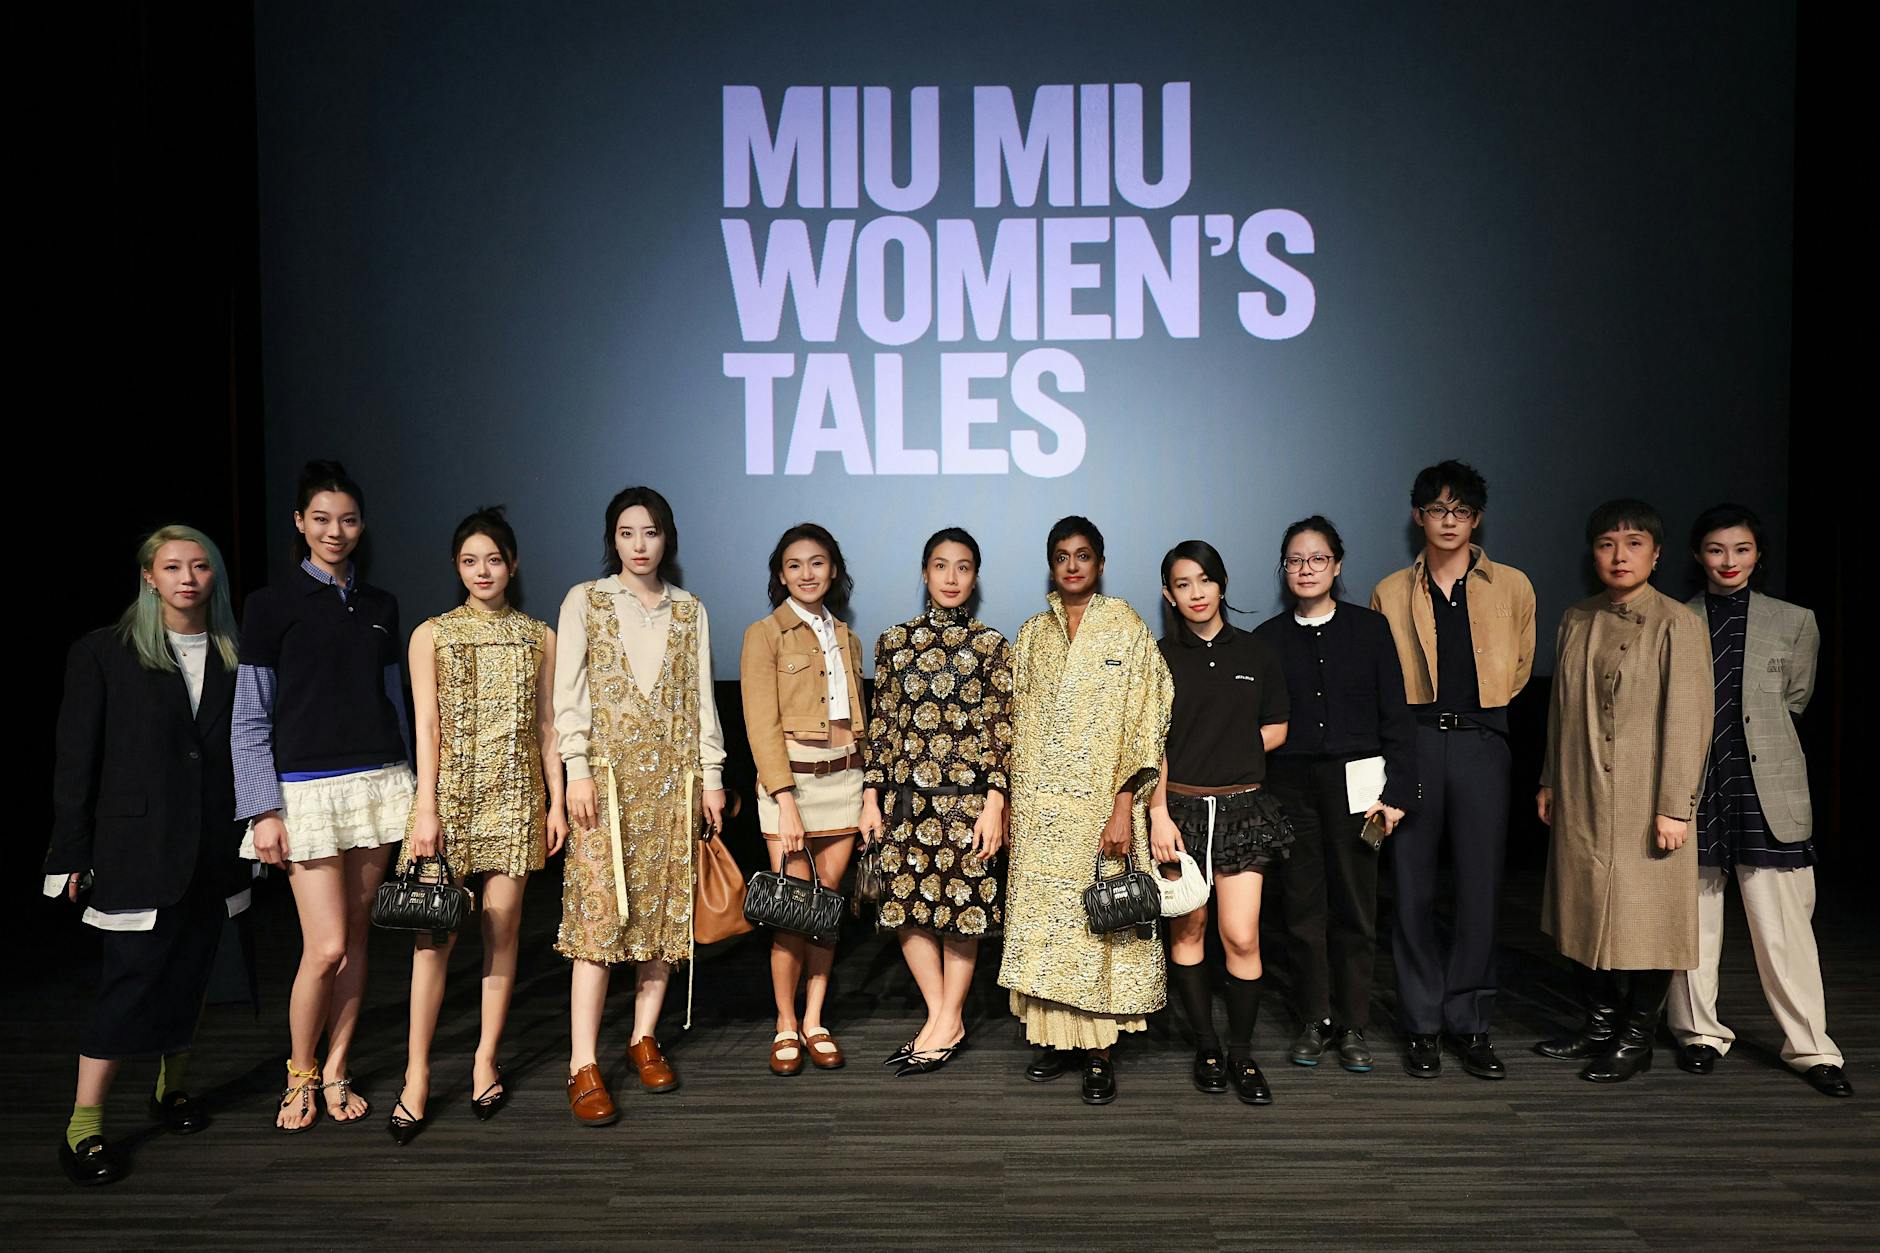 Miu Miu Women’s Tales: In diesem Kurzfilm prügeln Frauen auf Männer ein